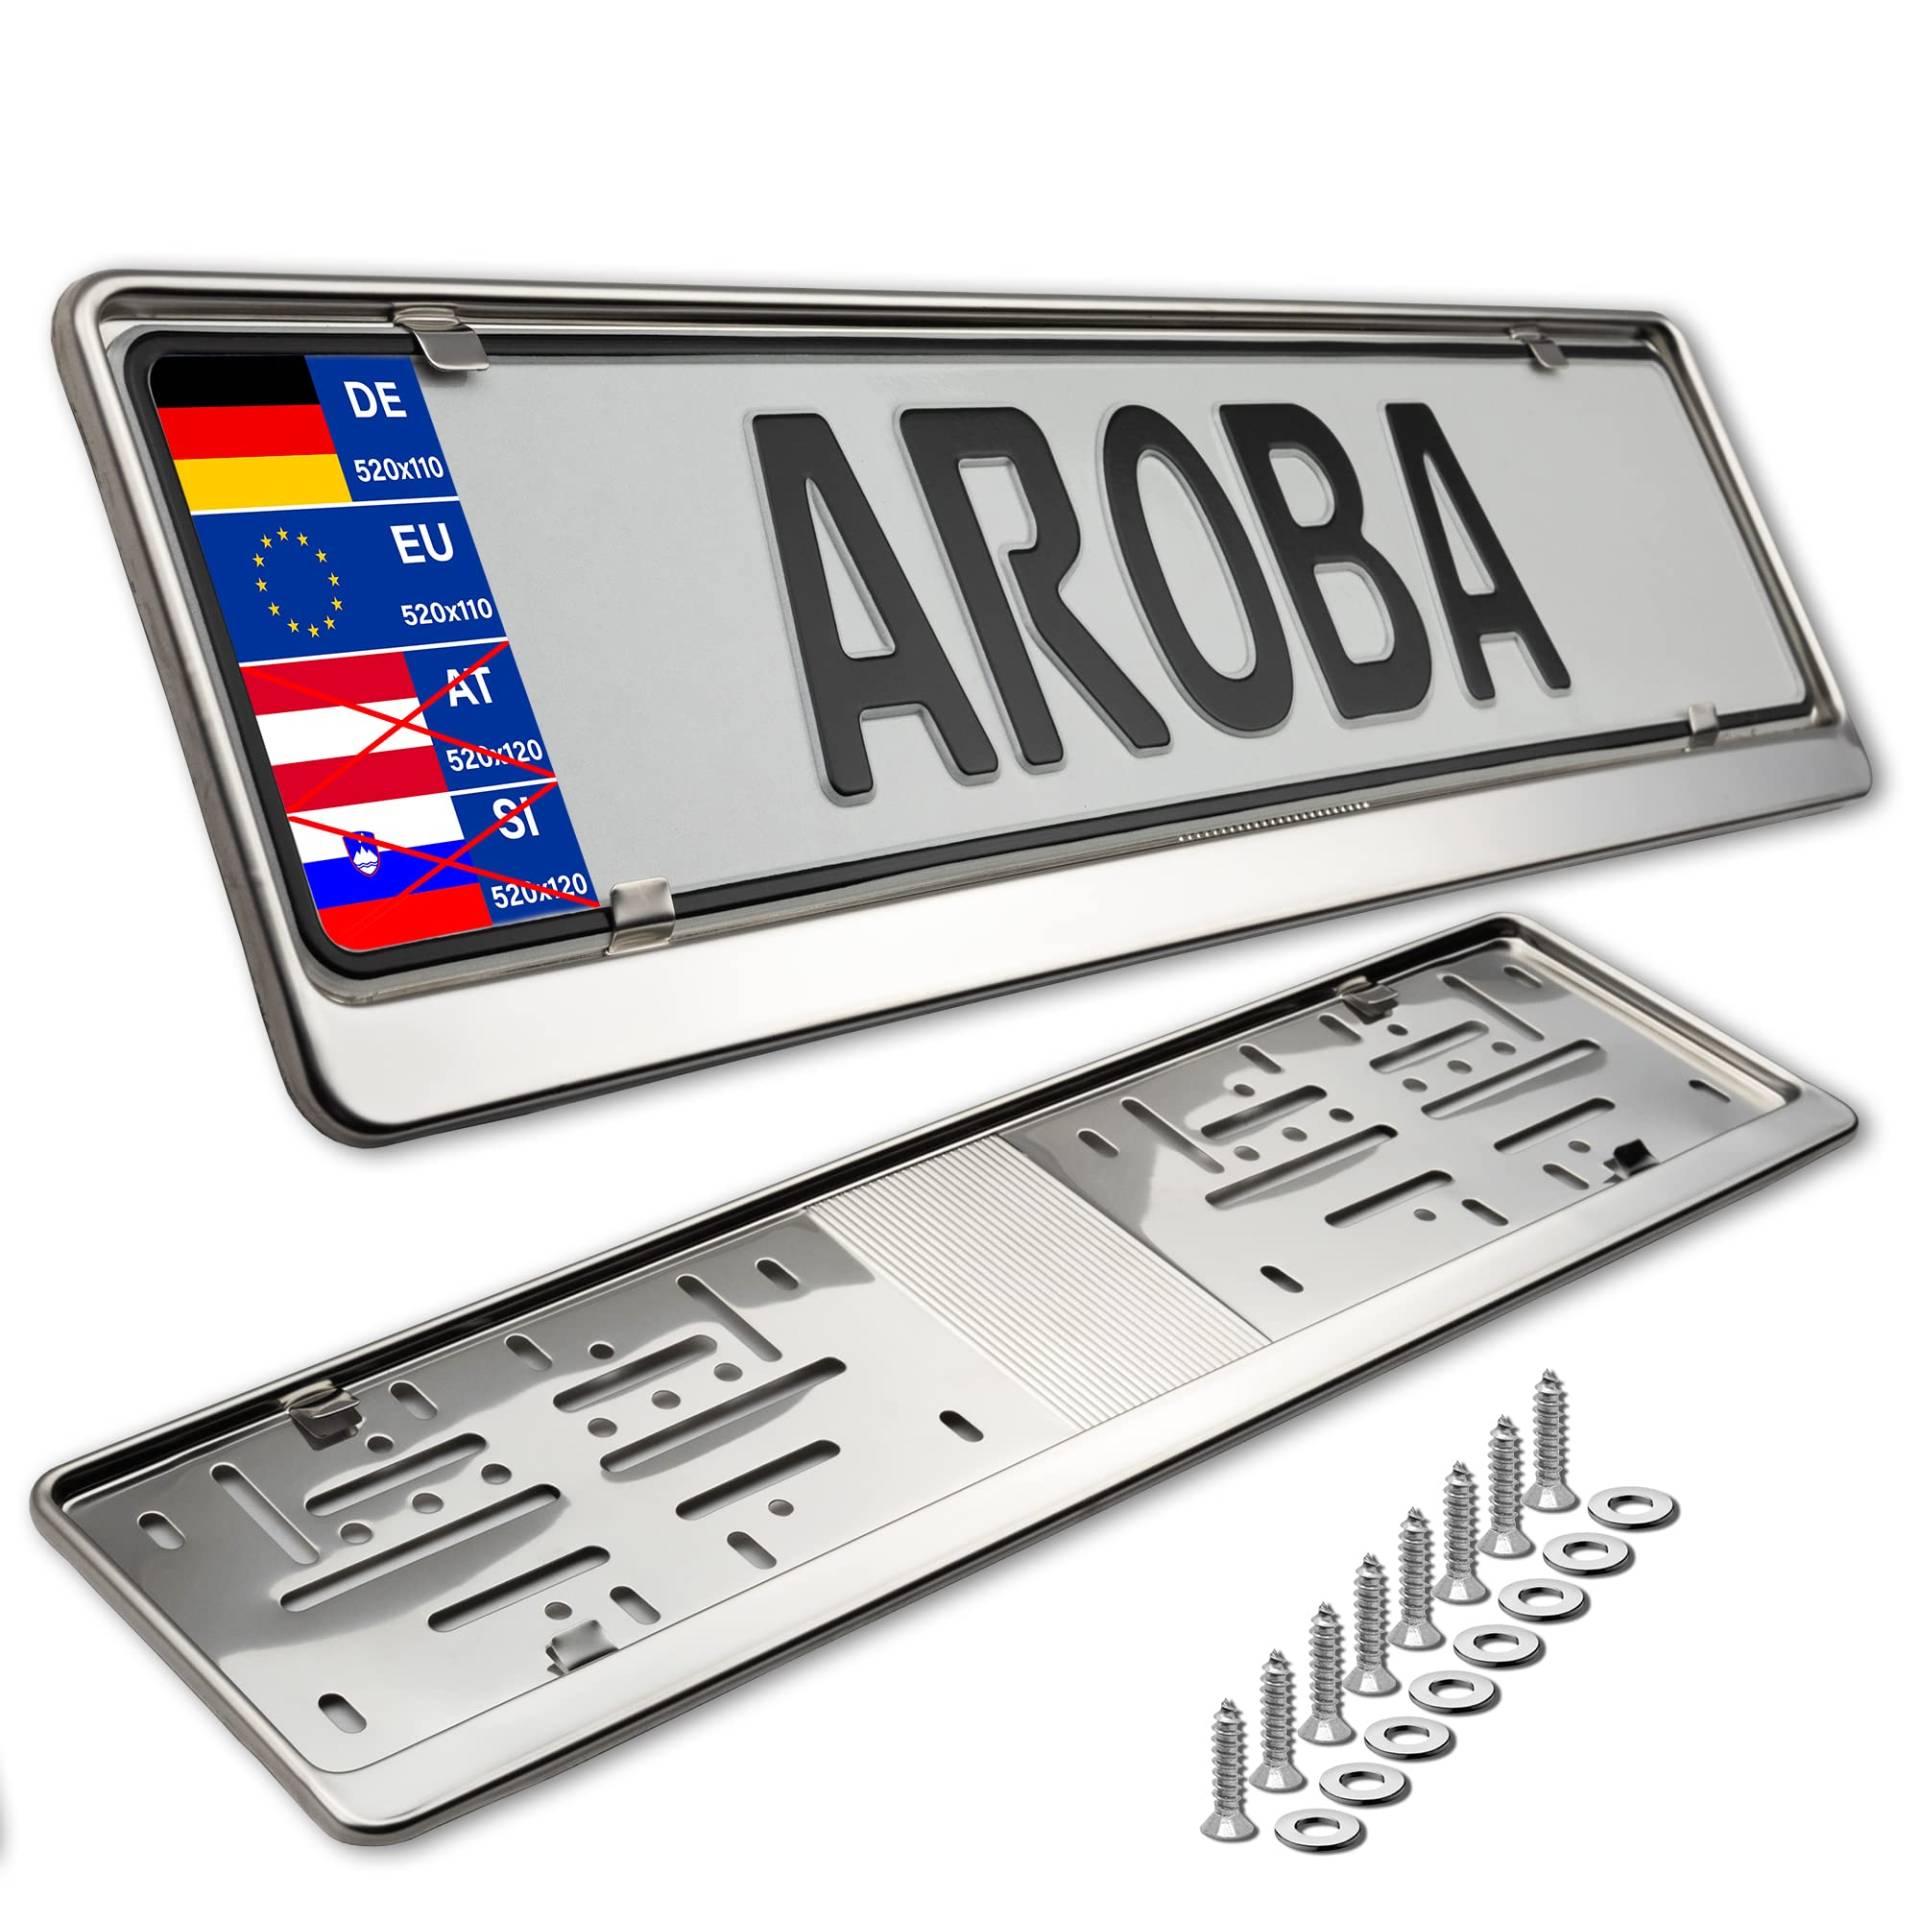 2X Premium Auto Kennzeichenhalter 100% Edelstahl POLIERT für Deutschland und EU (Kennzeichen der Größe 520mm x 110mm) Nummernschildhalter Kennzeichenhalterung INOX Rostfreier Stahl V2A von AROBA